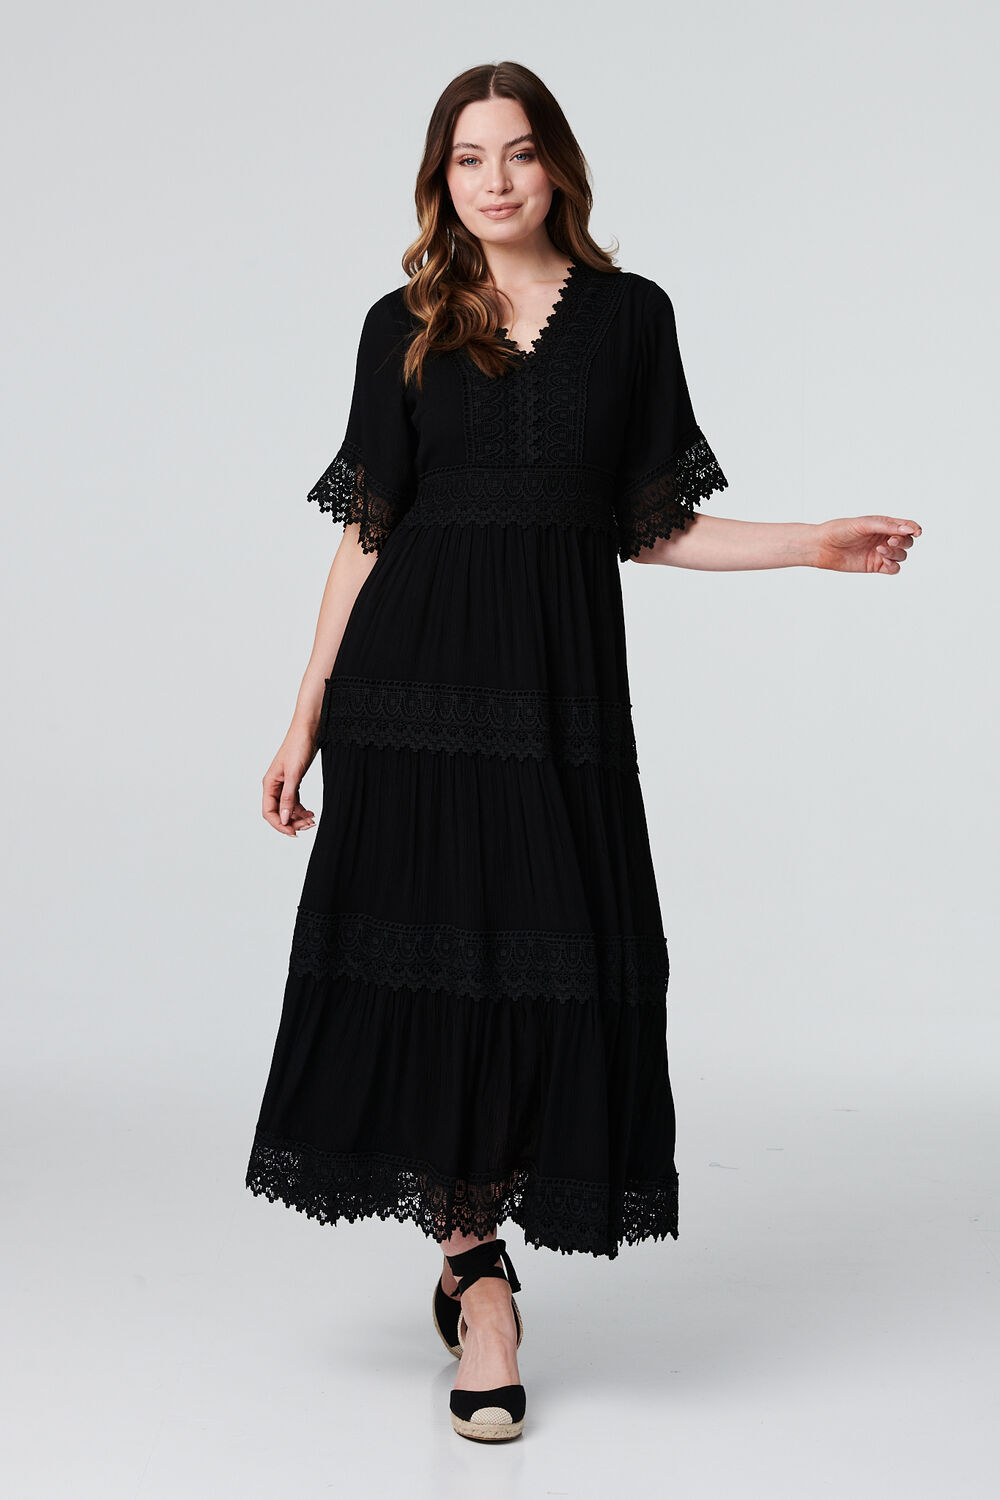 Izabel London Black - Short Sleeve Crochet Maxi Dress, Size: 12